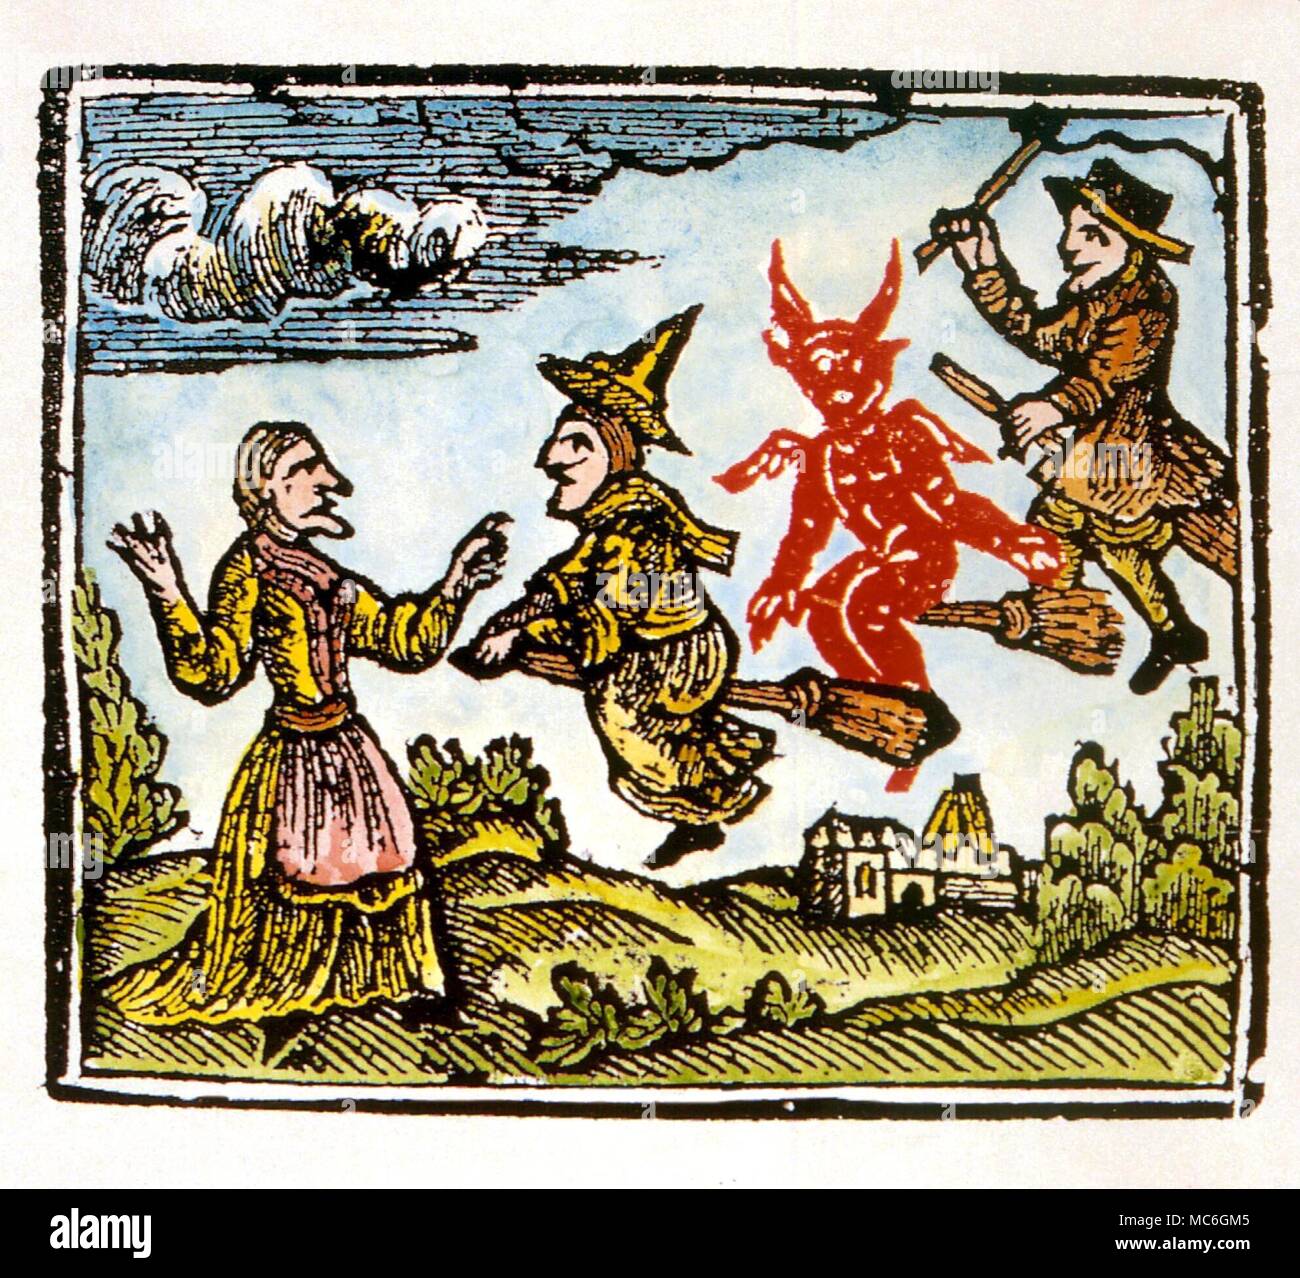 La sorcellerie - Lancashire witches illustration d'une brochure de pétrole brut de 1612, relatives à la manie de la sorcellerie du Lancashire. Le transvecting Demdyke sorcière est probablement l'ancienne. Dix sorcières pendu après le procès Banque D'Images